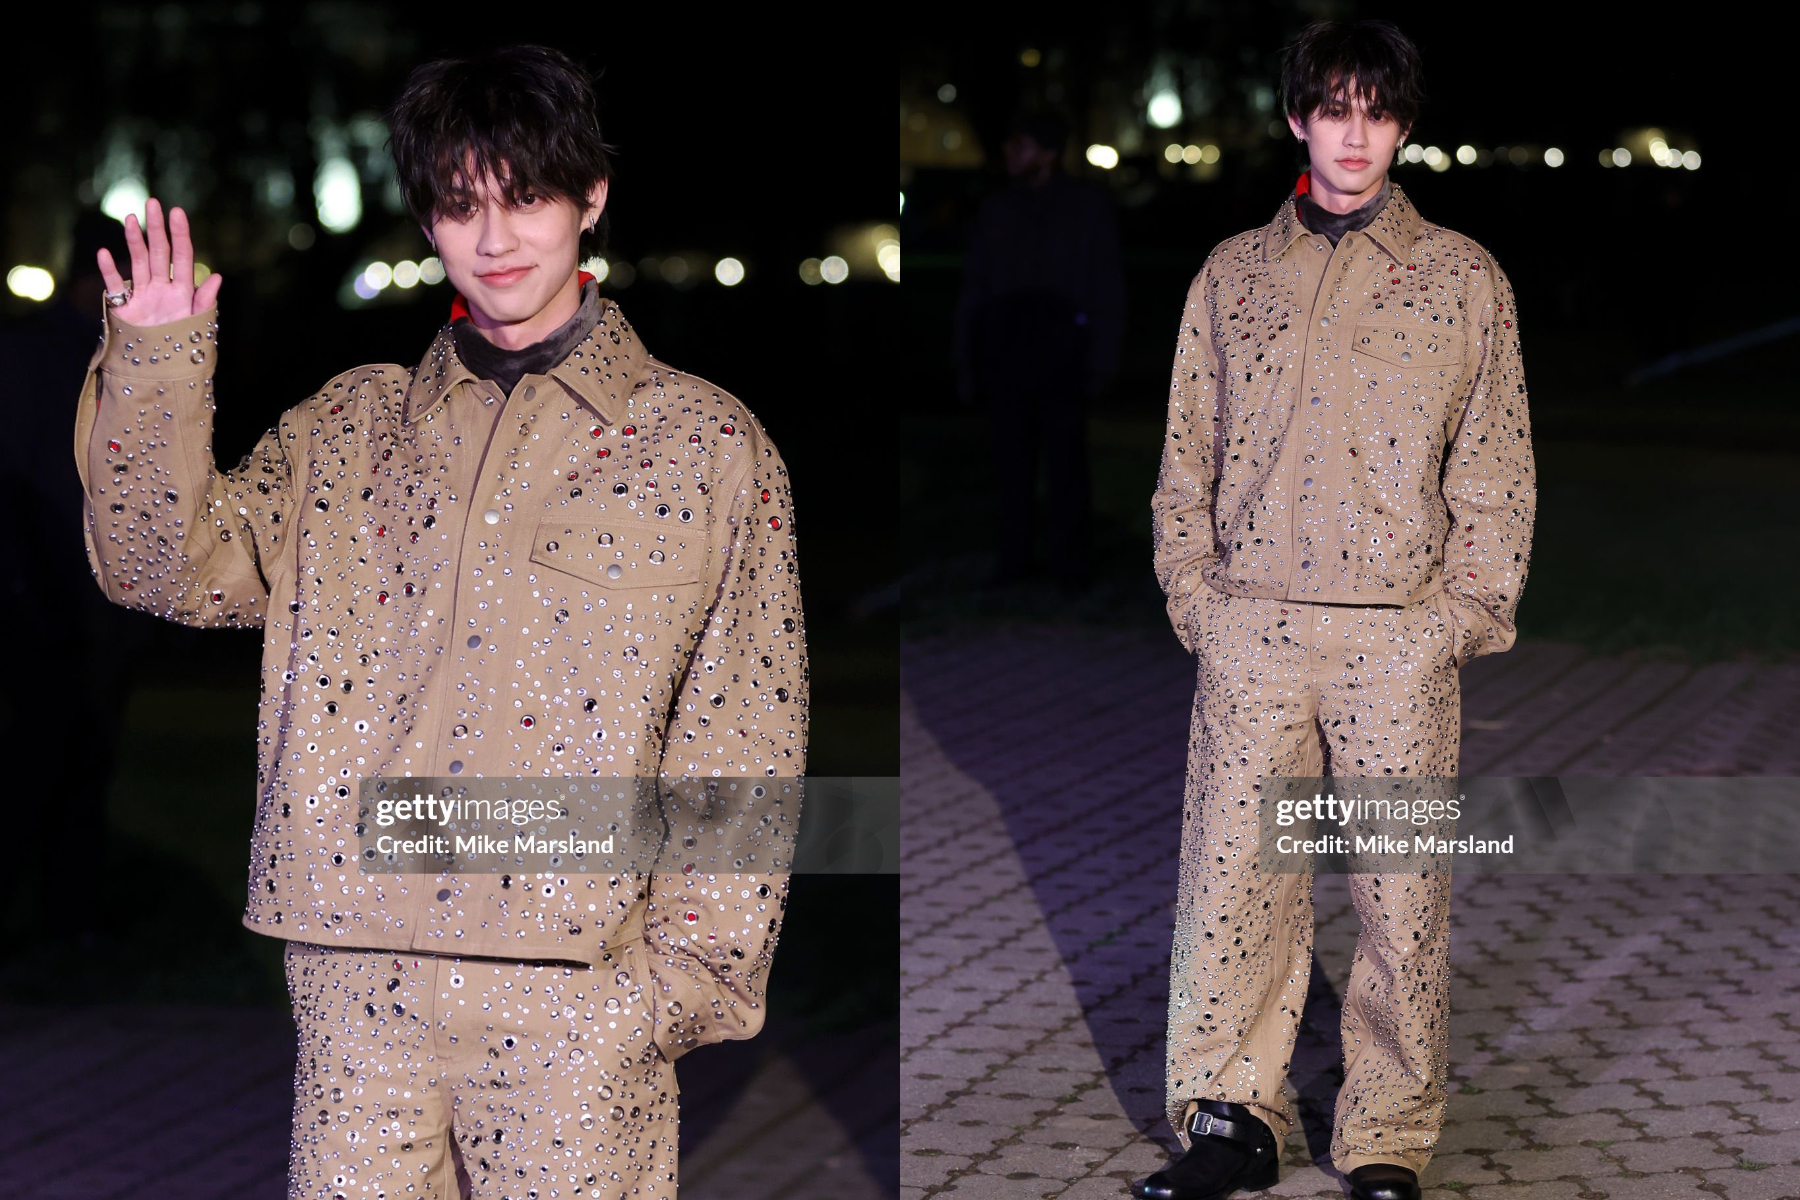 Dàn sao Thái qua “ống kính hung thần” Getty Images ở Paris Fashion Week: Lisa thần thái ngút ngàn, Baifern - Mai Davika và các mỹ nhân khác thì sao? - Ảnh 19.